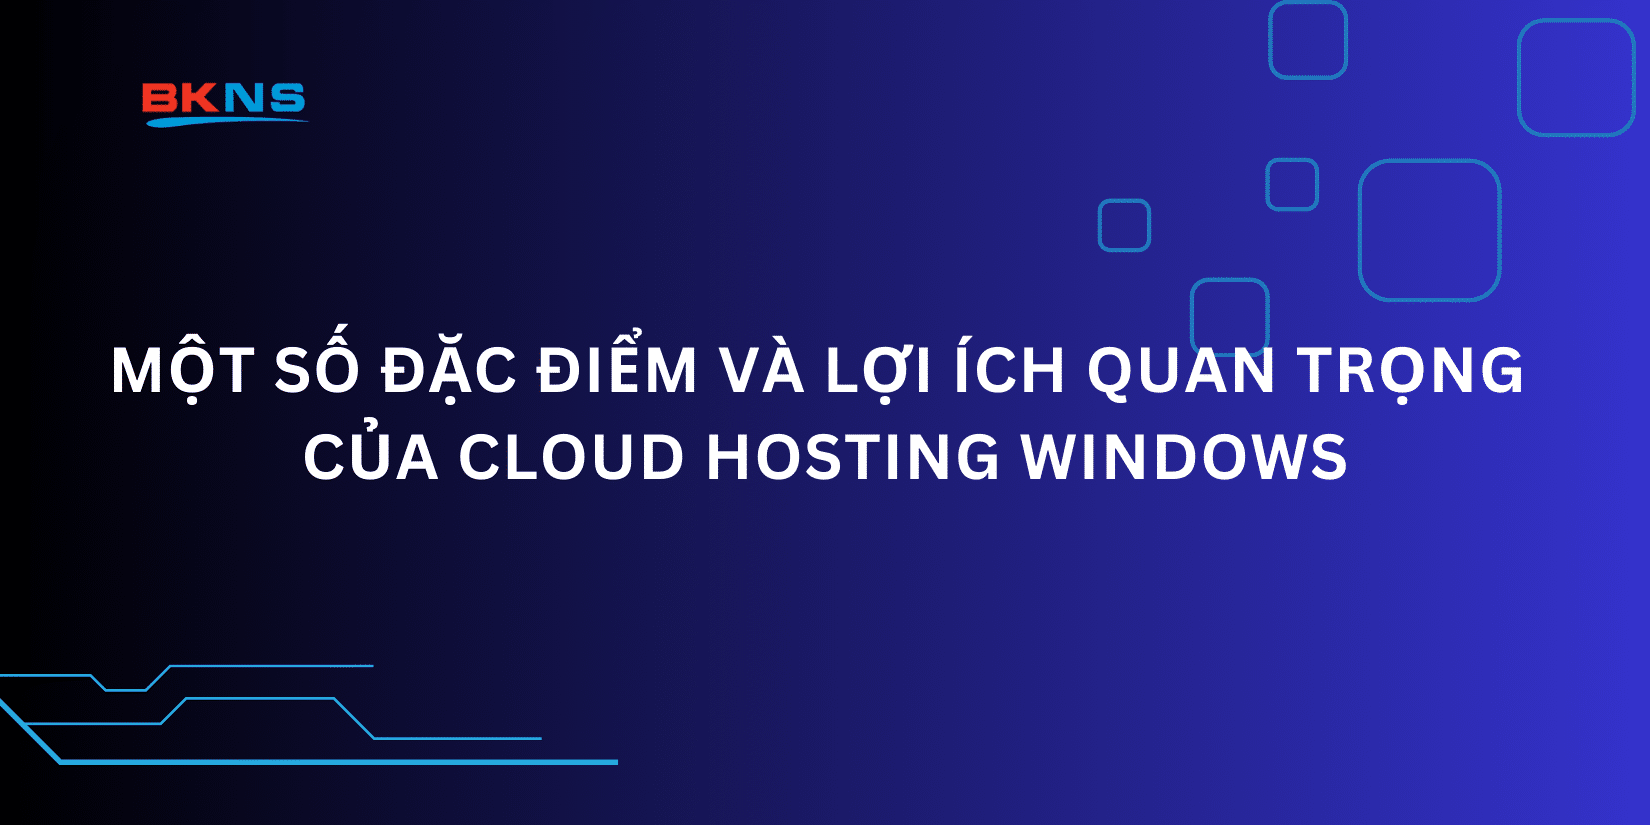 Một số đặc điểm và lợi ích quan trọng của Cloud Hosting Windows